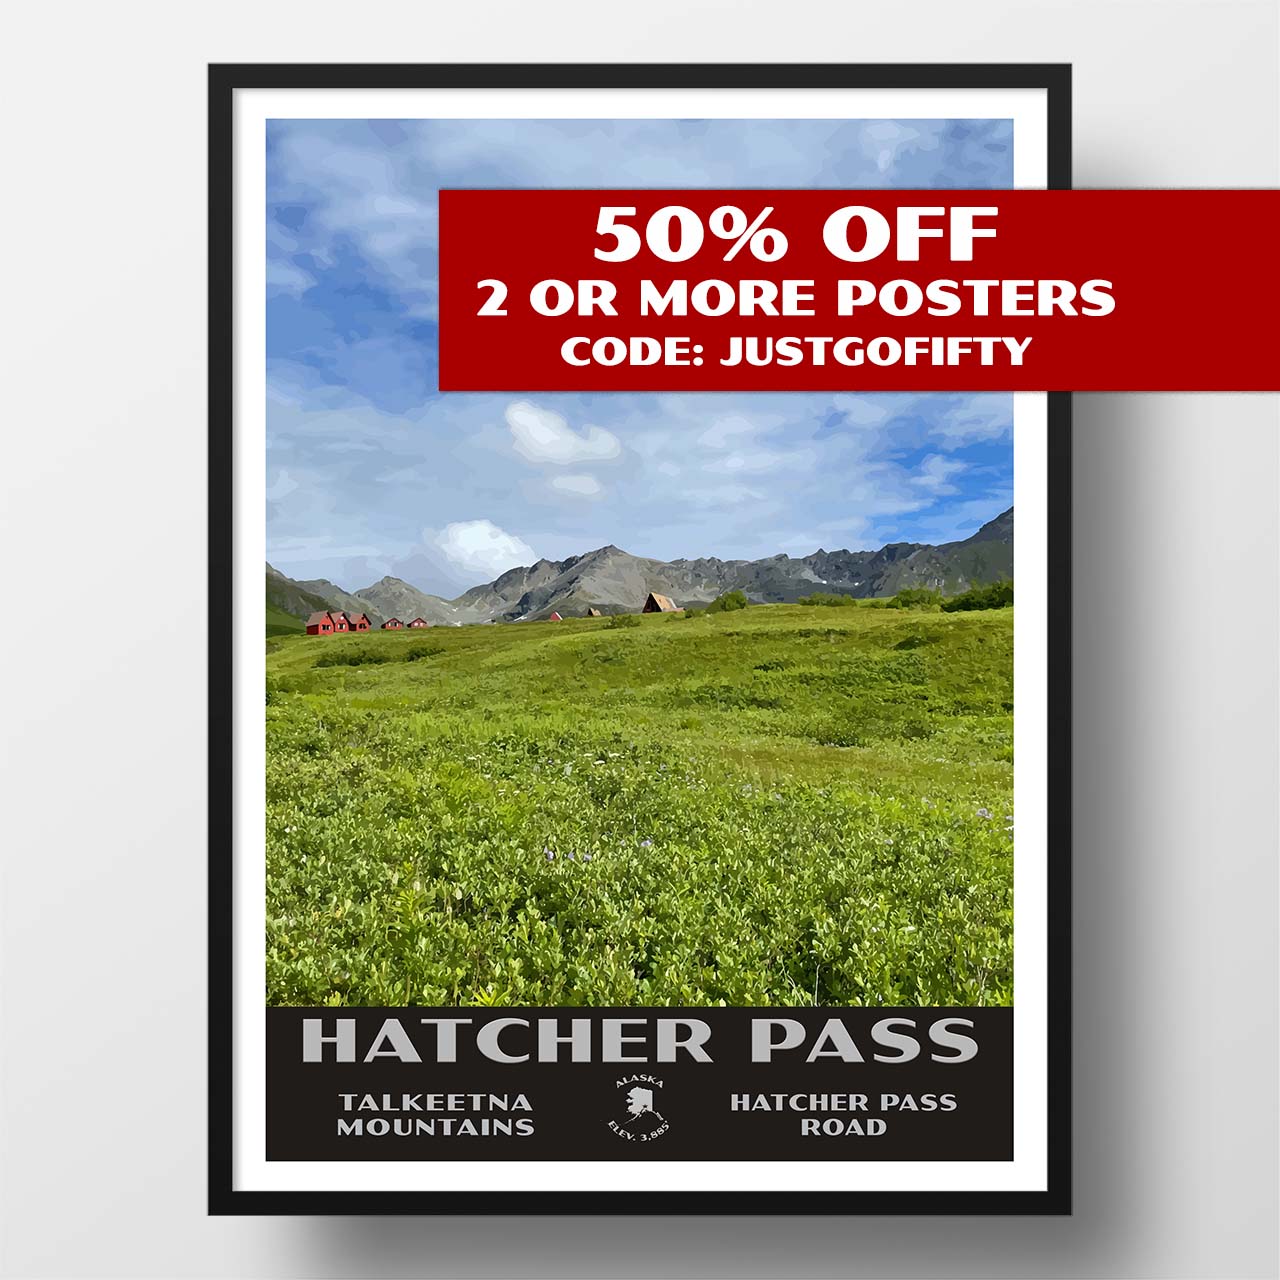 Hatcher pass poster